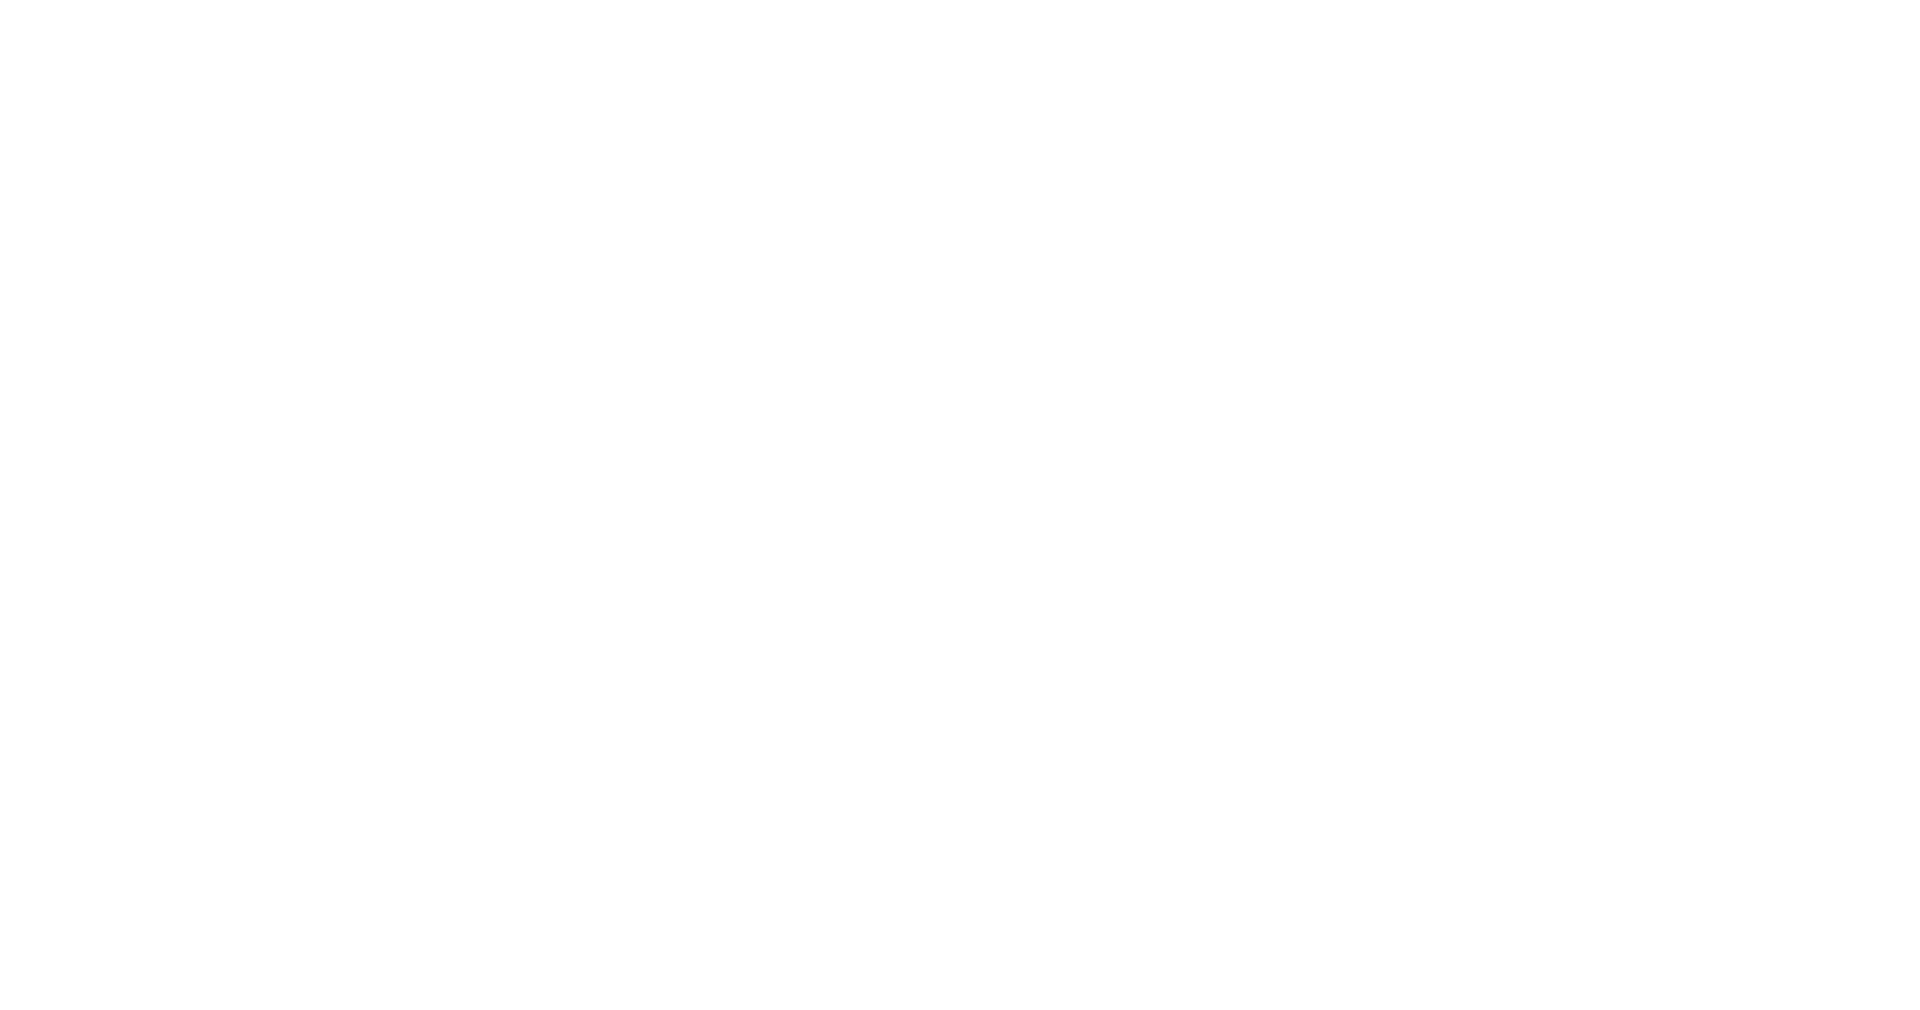 Aktion Gesunder Rücken (AGR) e.V.